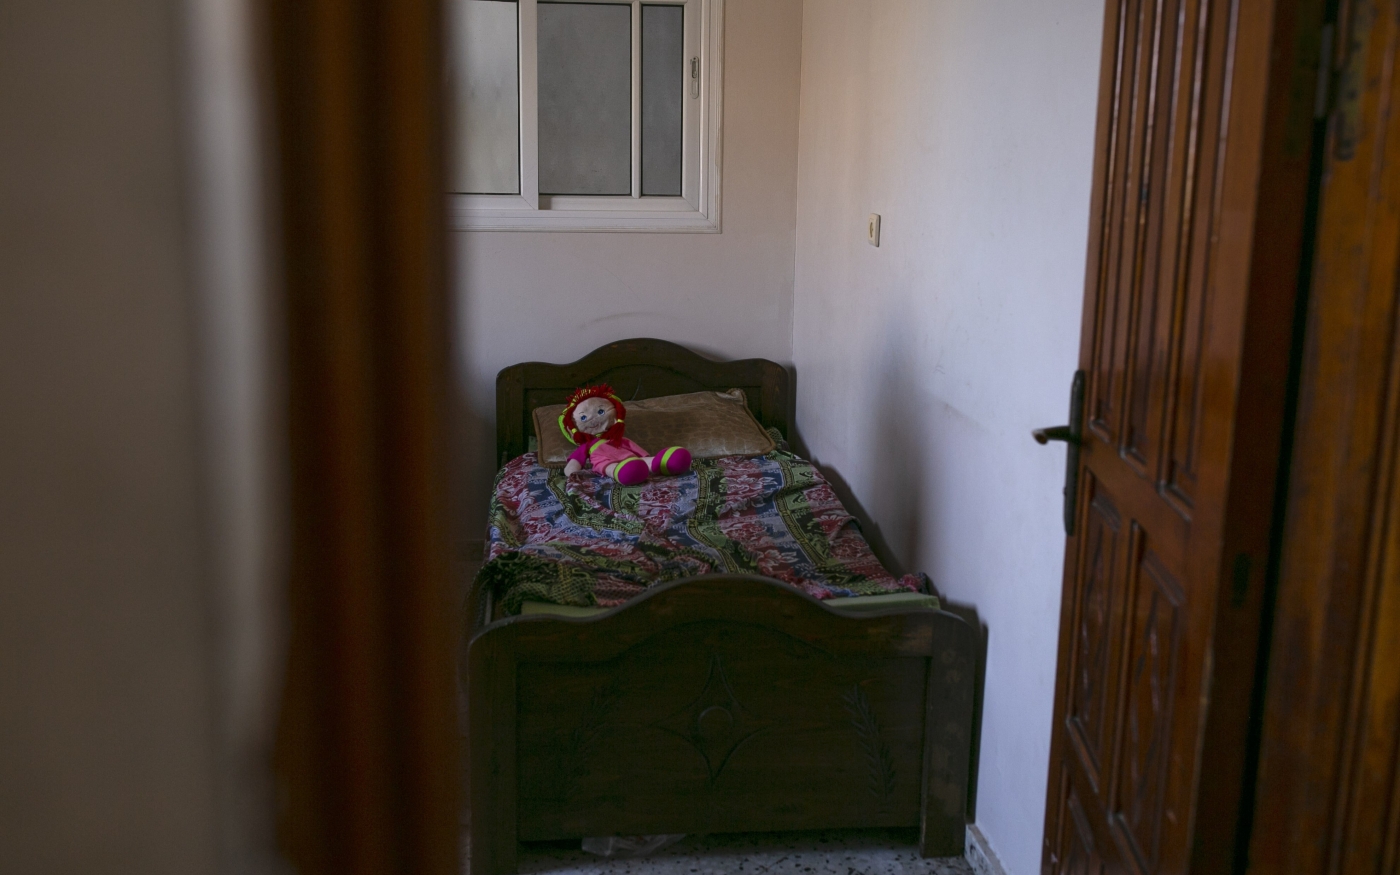 La poupée d’Alaa Qaddoum, Tala, sur le lit désormais vide de la petite fille de 5 ans dans sa maison du quartier de Shujaiya, au nord de Gaza, le 5 août 2022 (MEE/Samar Abu Elouf)